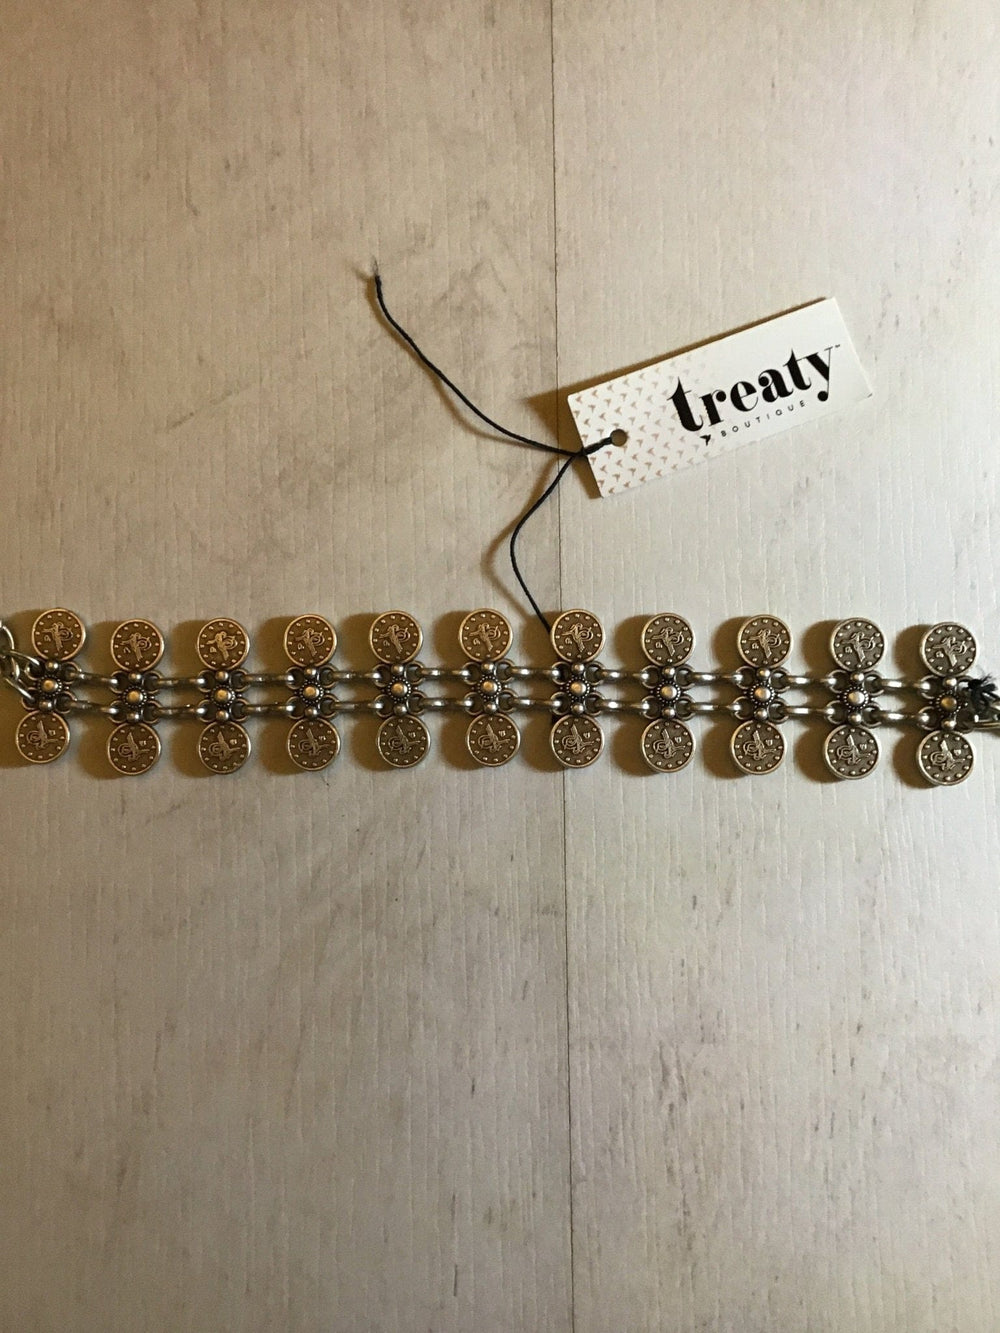 Treaty Mira bracelet £18.99 now £9.49 - Crabtree Cottage